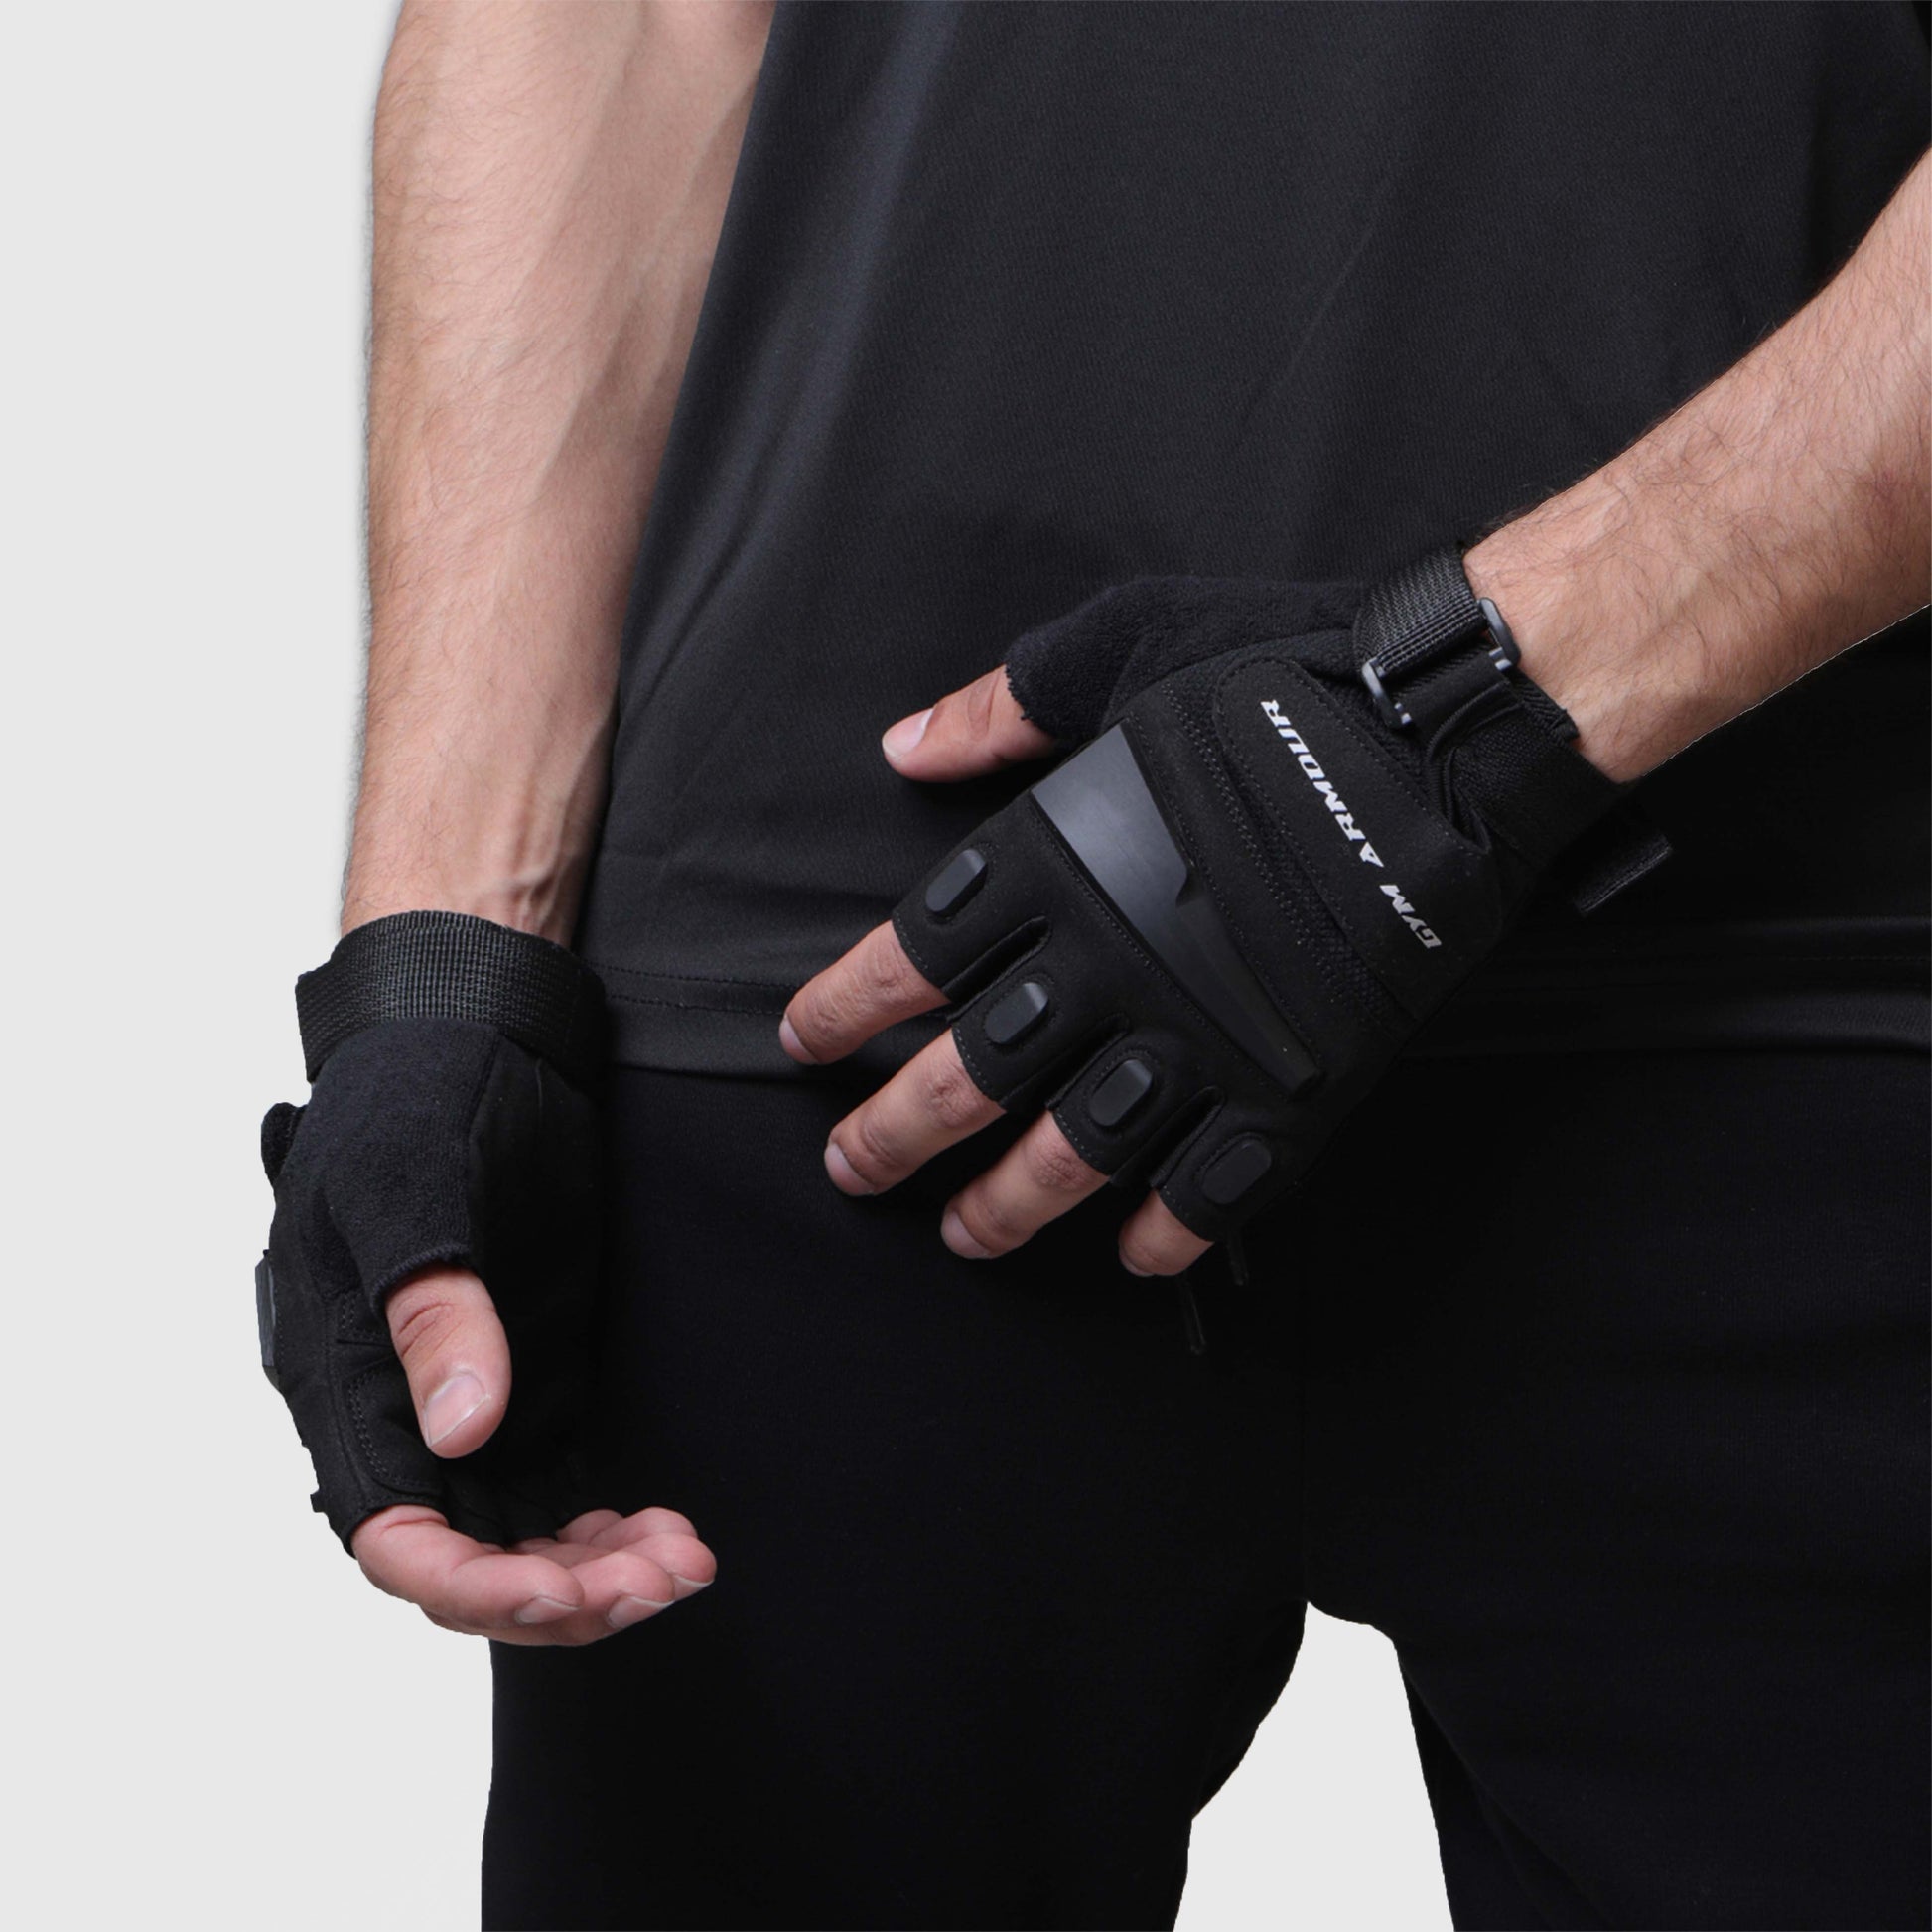 Basic Gloves - Valetica Sports